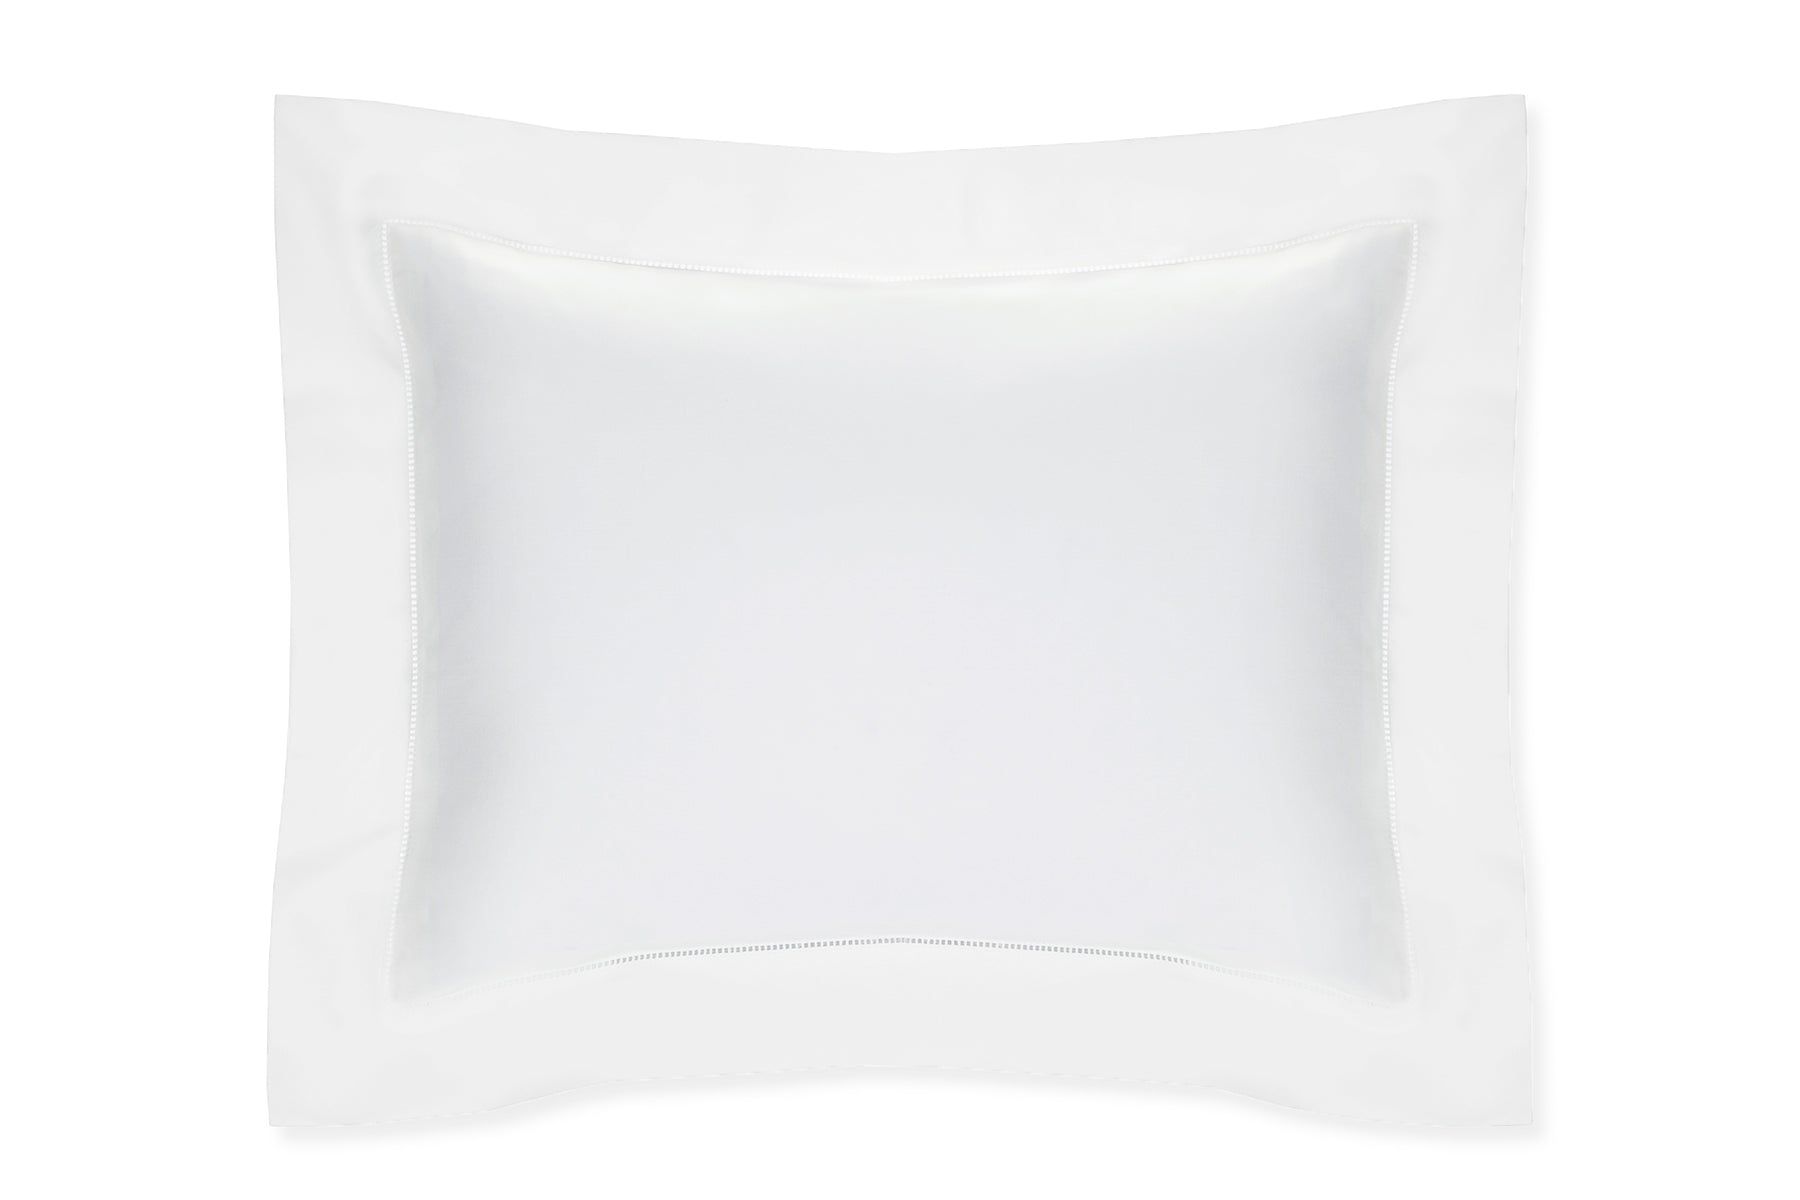 Celeste Pillow Sham in White